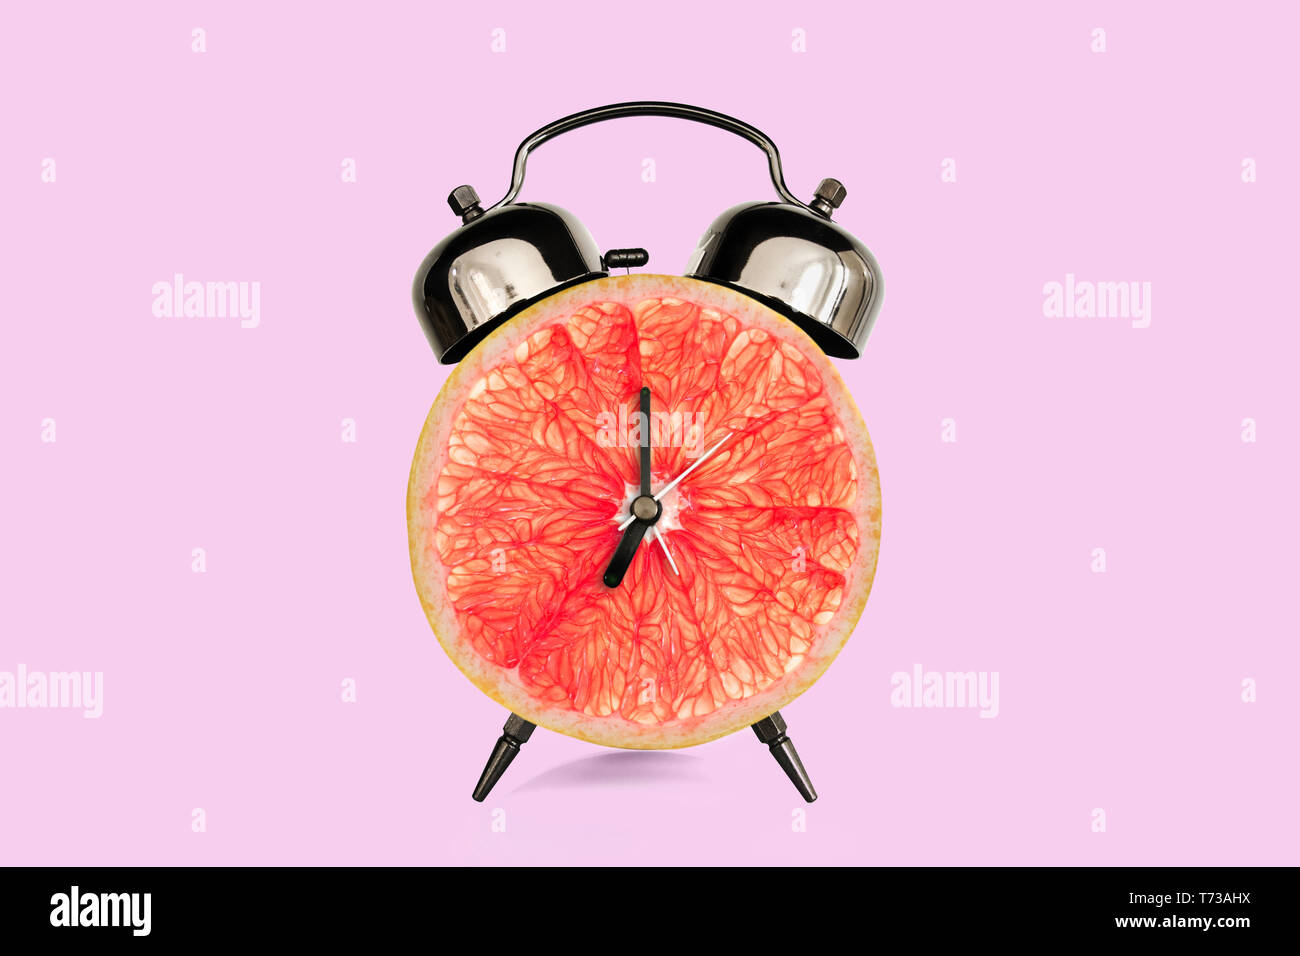 Rodaja de pomelo despertador, fondo rosado pastel. fruta y vitaminas dieta al concepto de nutrición desayuno Foto de stock